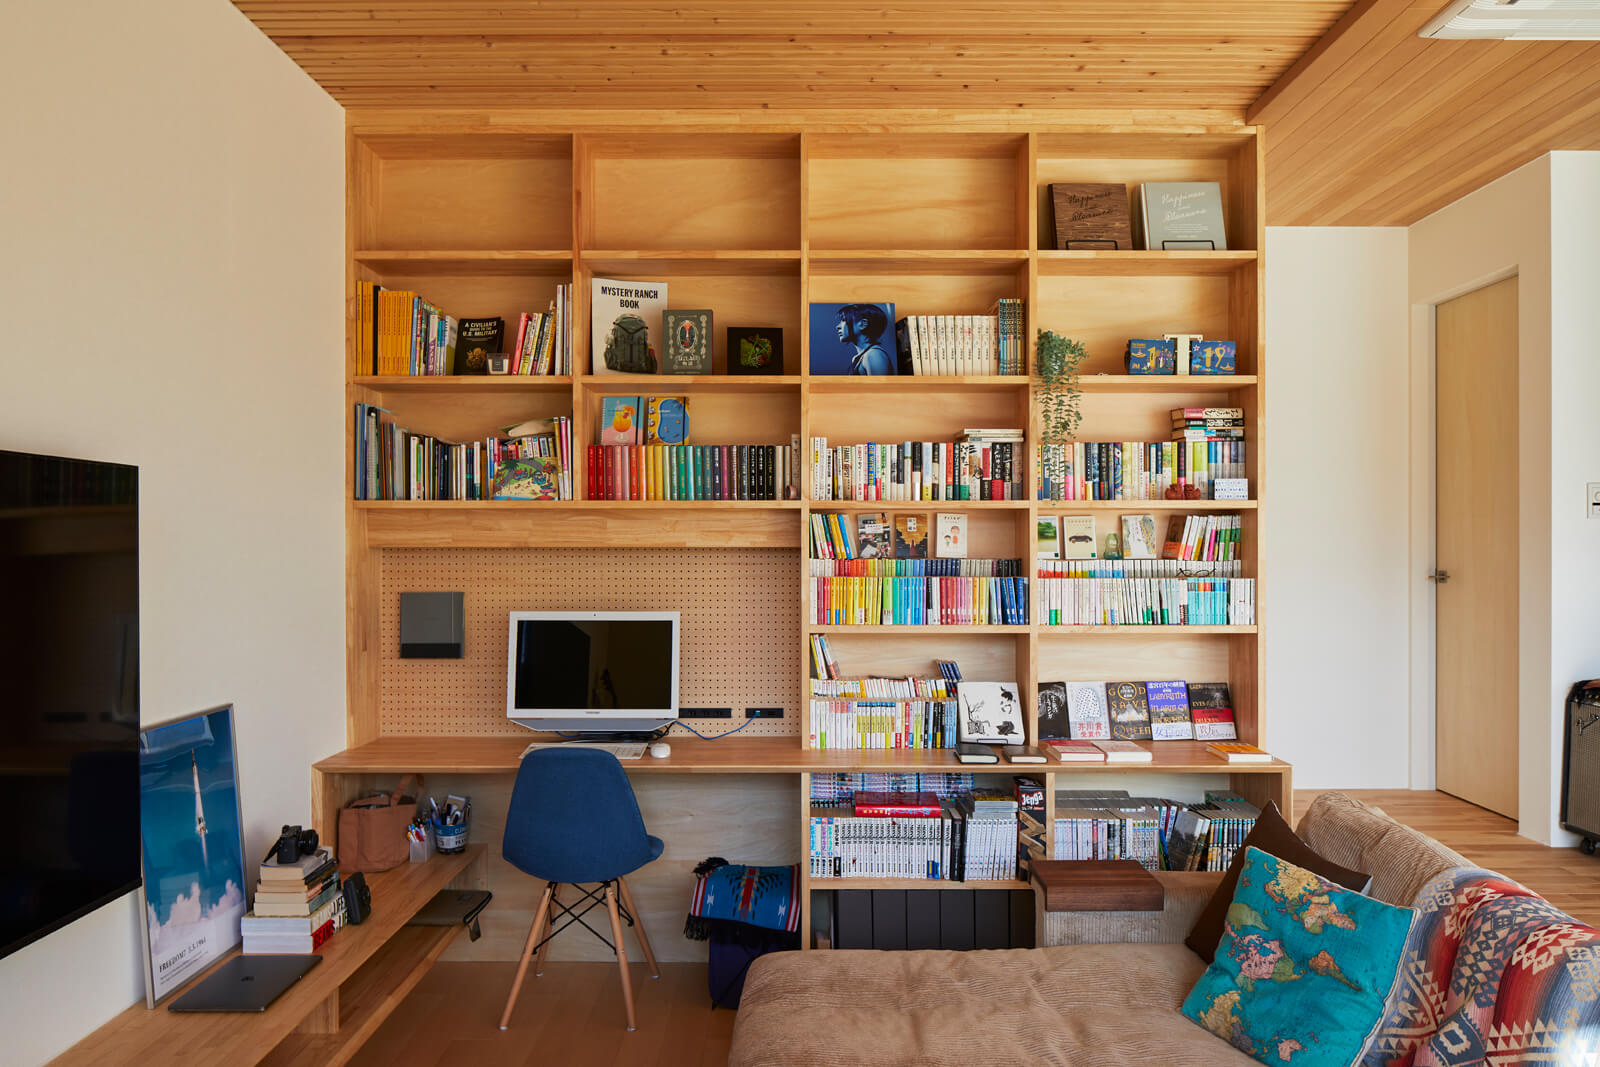 読書好きな奥さんの要望で、リビングの壁一面に本棚とPCカウンターを造作。本の並べ方にもこだわっておしゃれなインテリアのよう